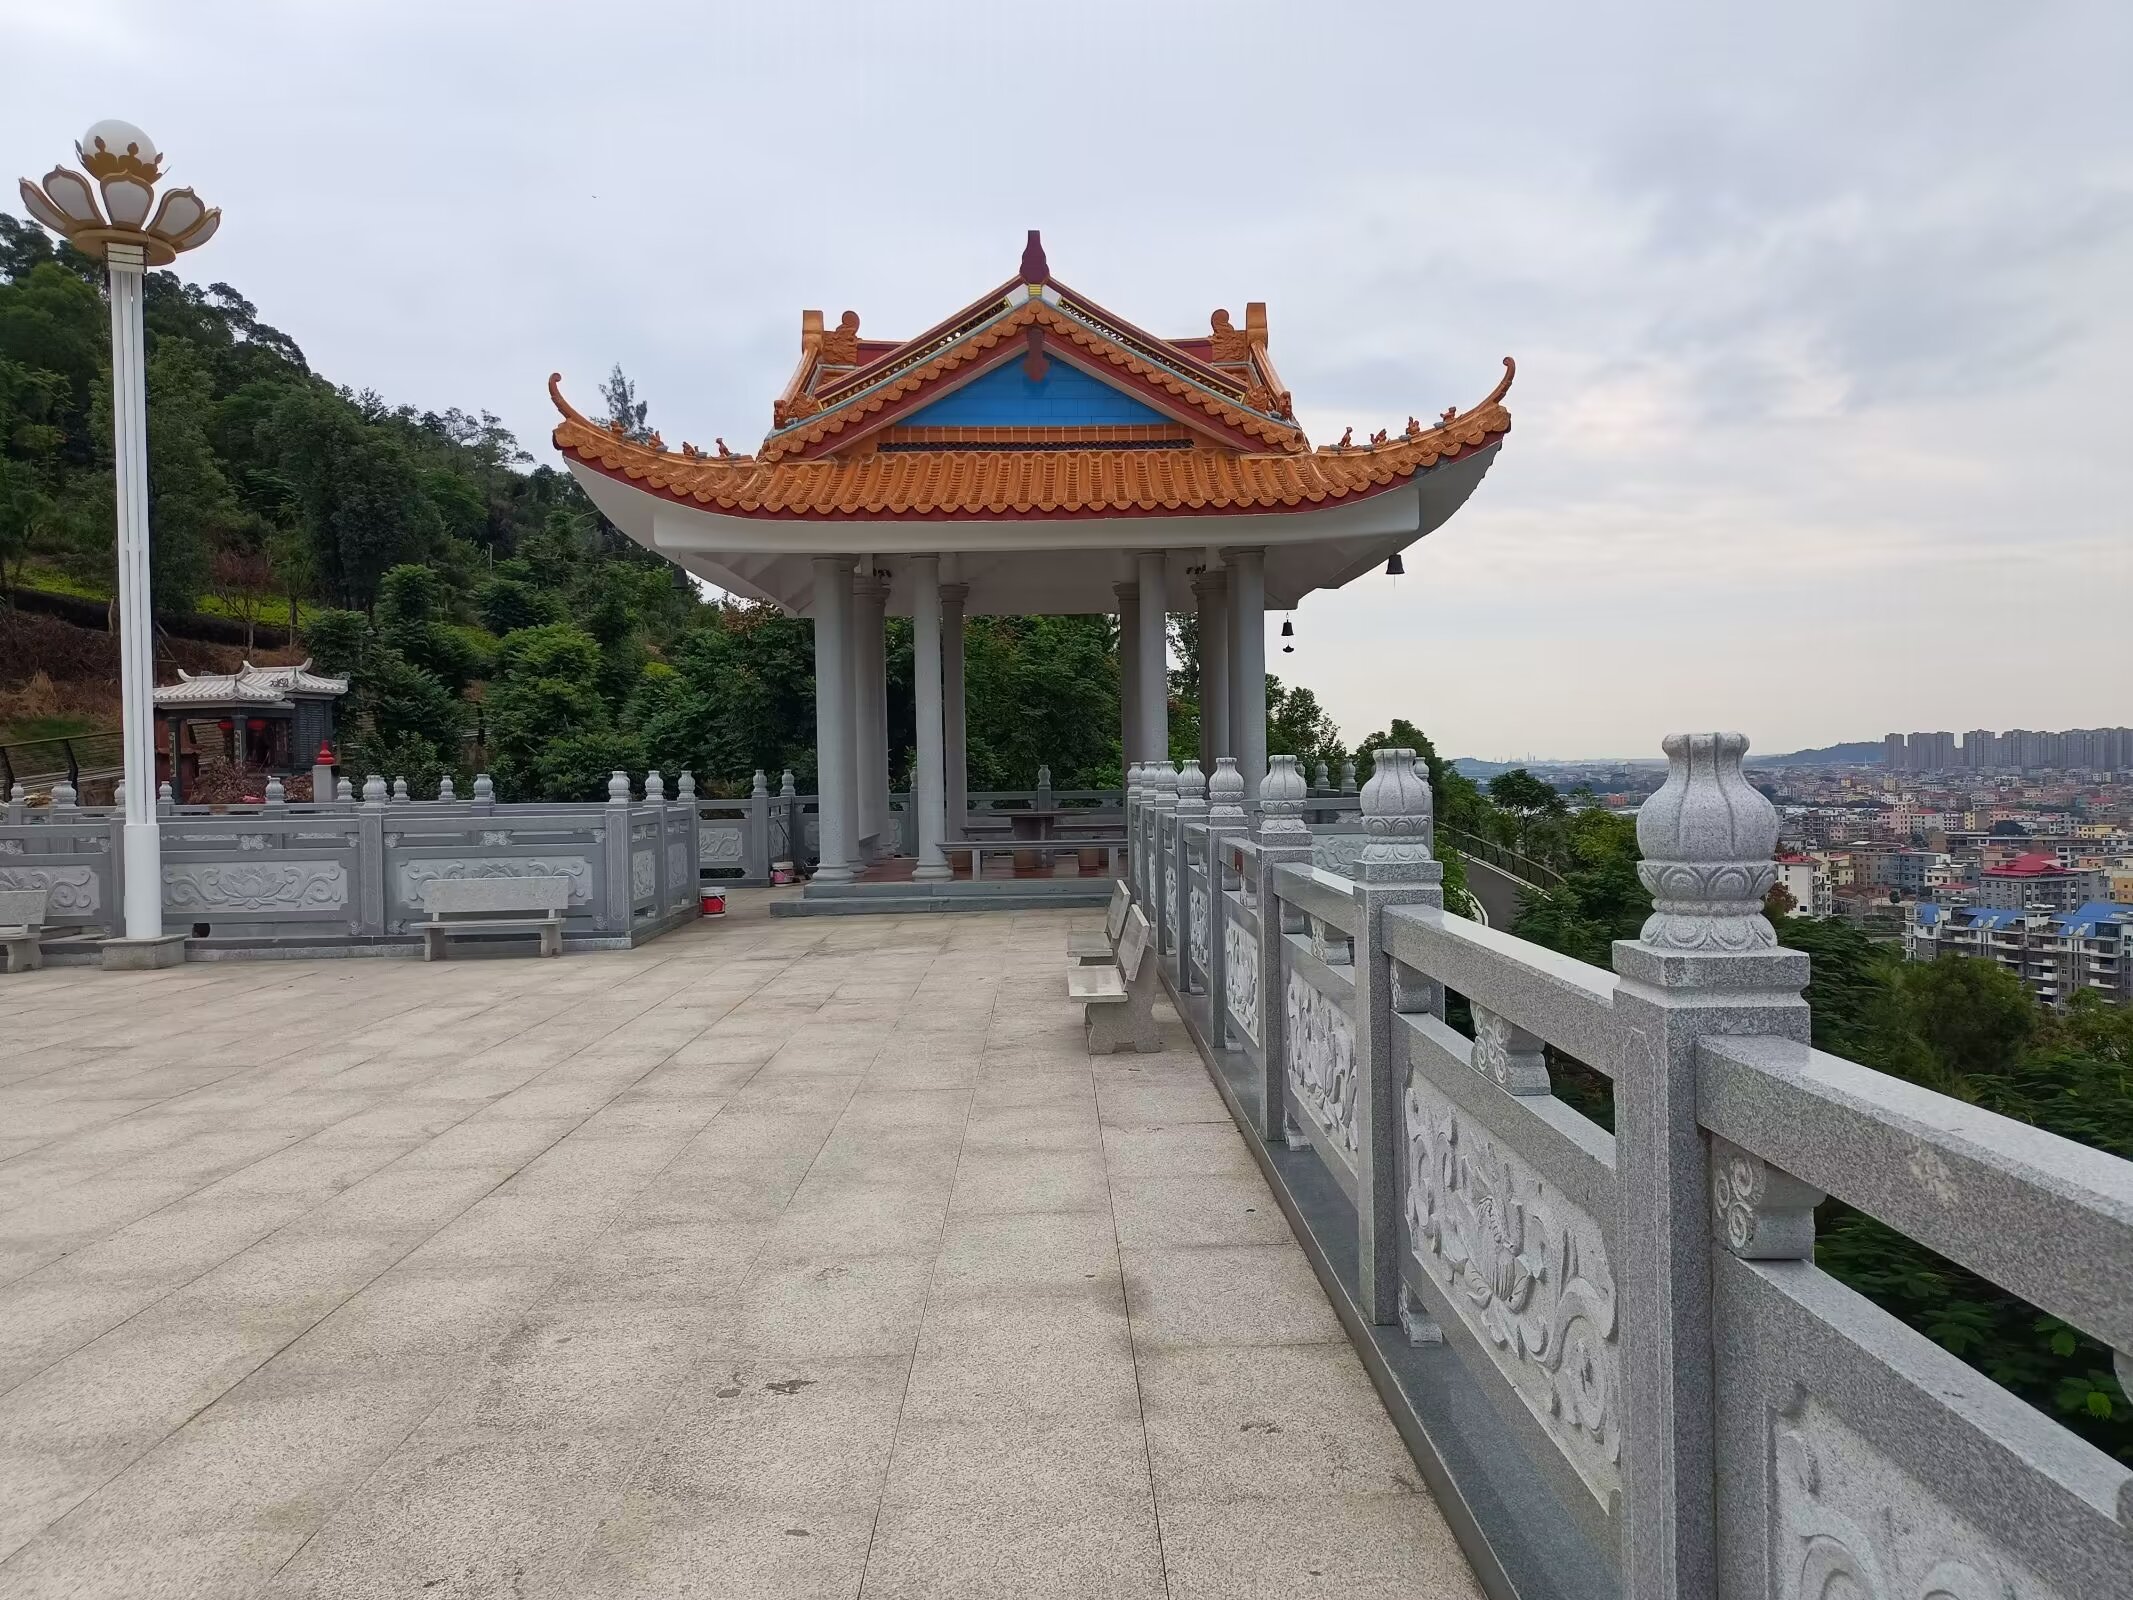 仙游县枫亭镇塔斗山上的天中万寿塔,又称塔斗塔或青螺塔,以其独特的阿